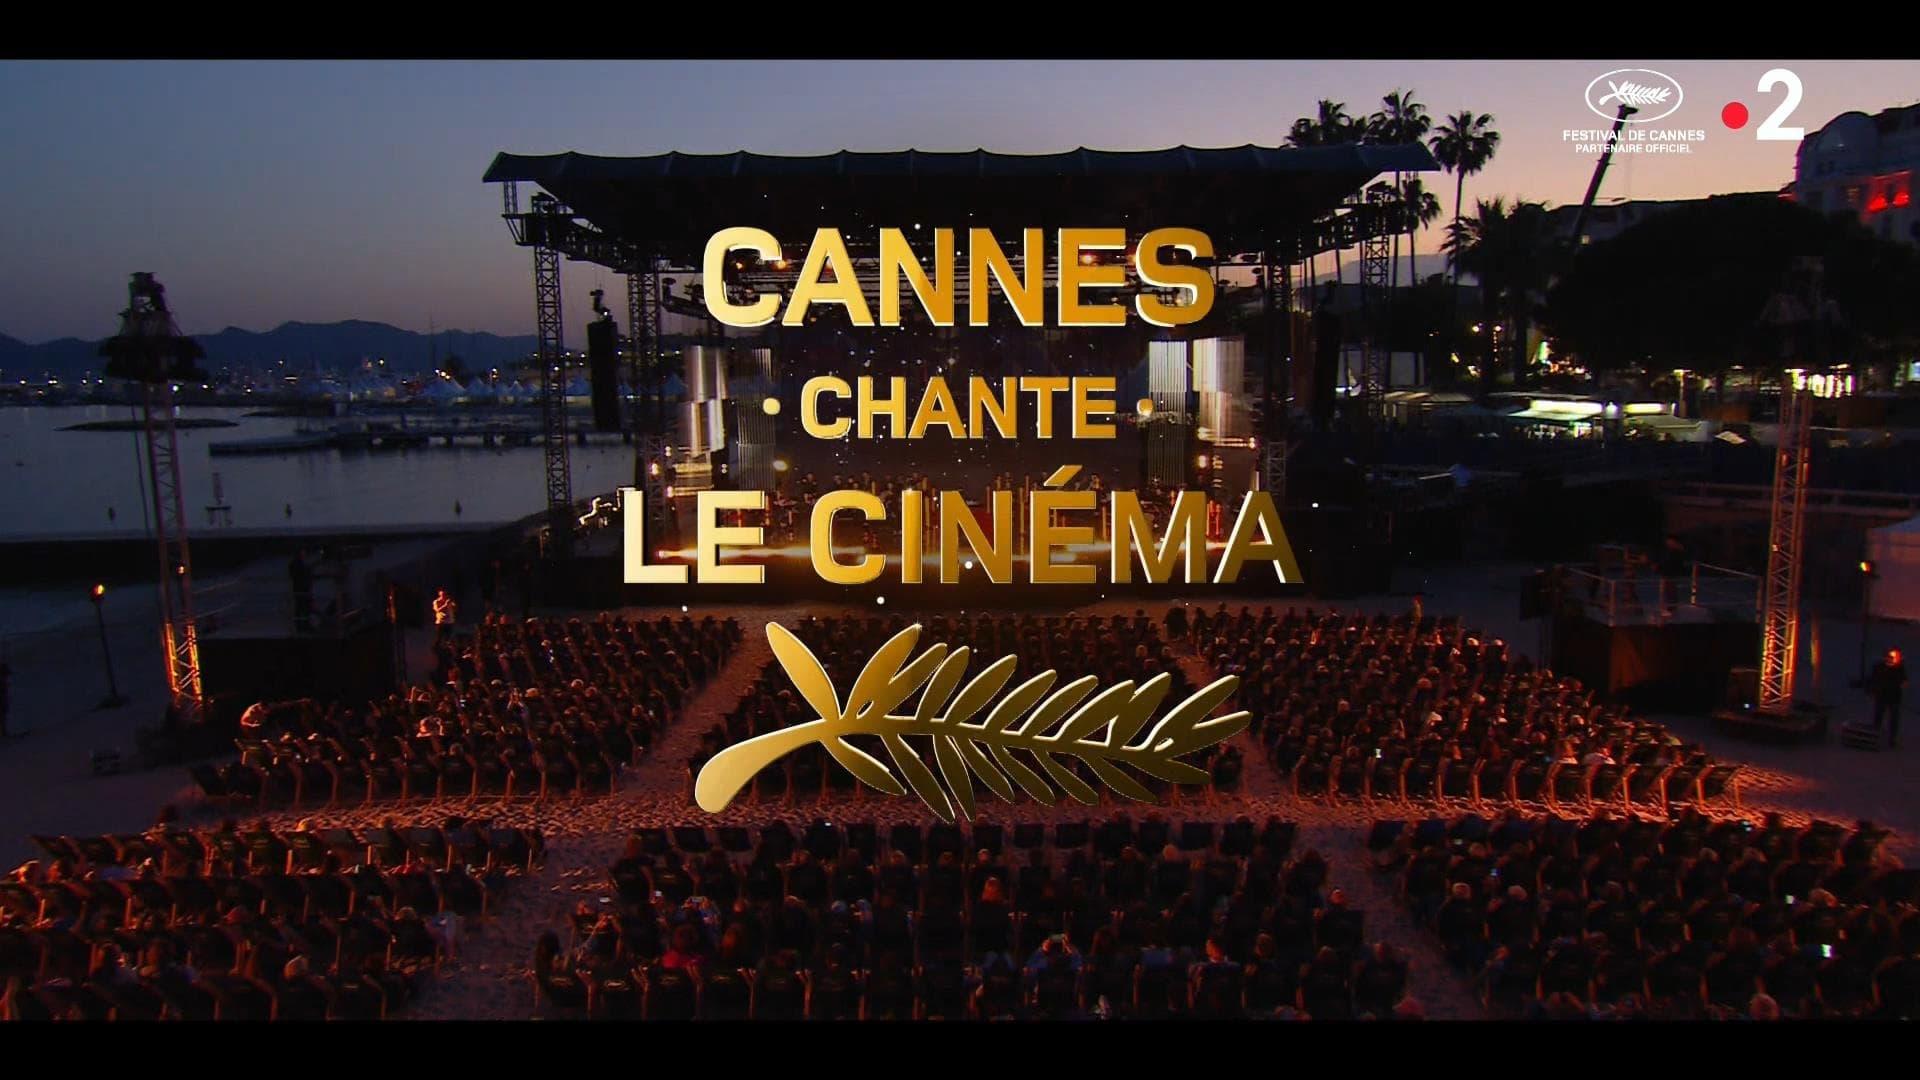 Cannes chante le cinéma backdrop